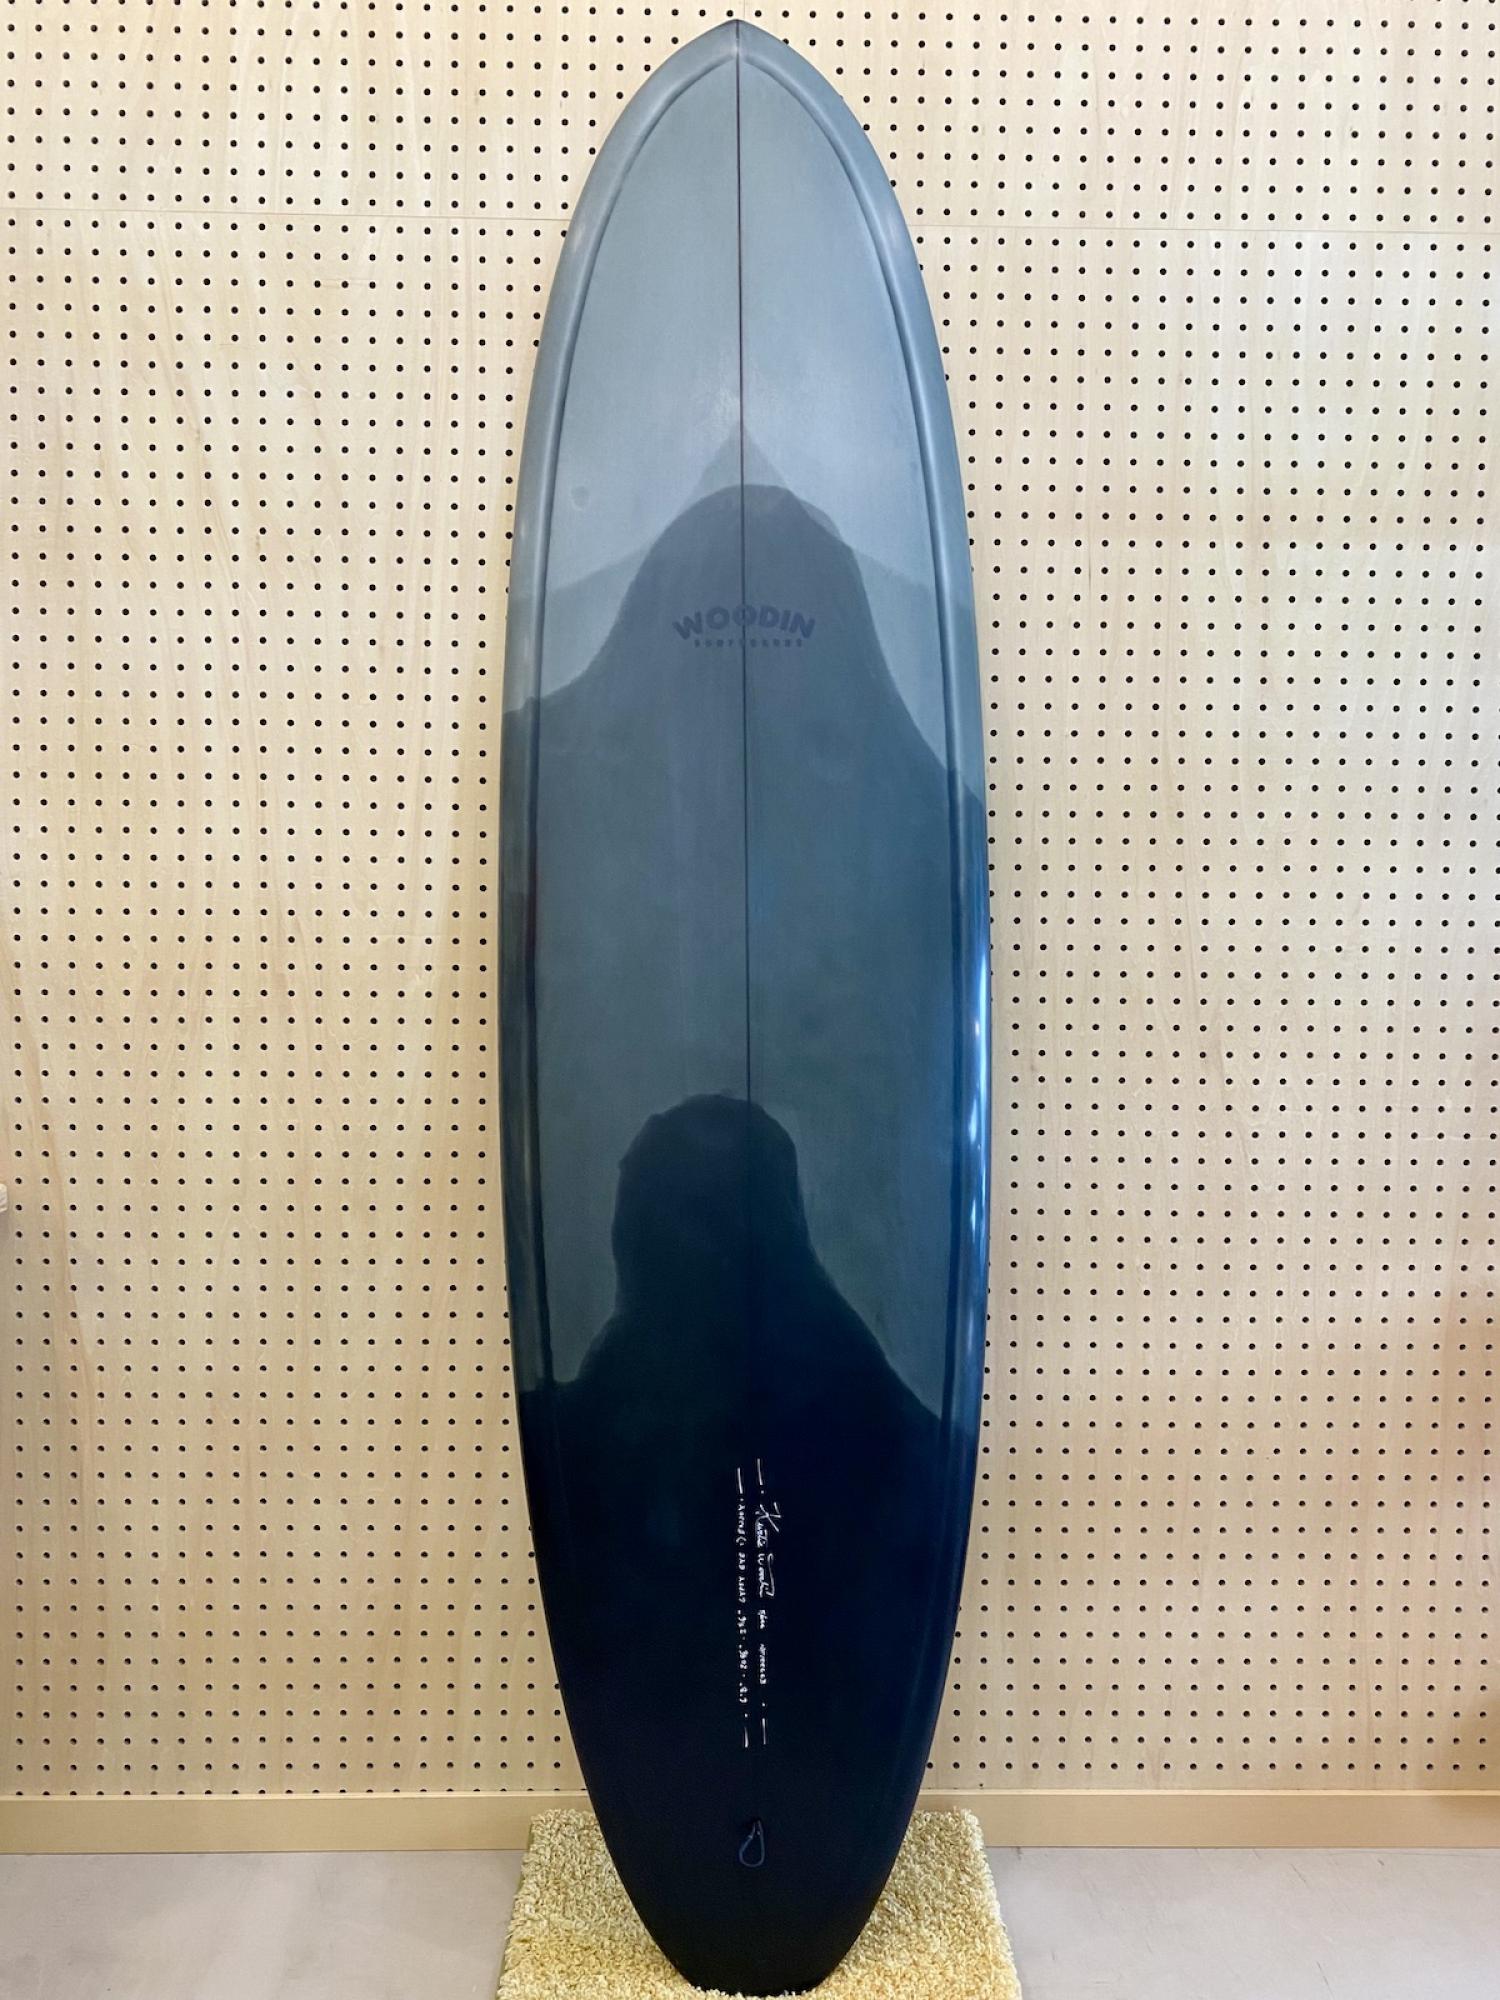 Gypsy Eye model 6.8 WOODIN SURFBOARDS